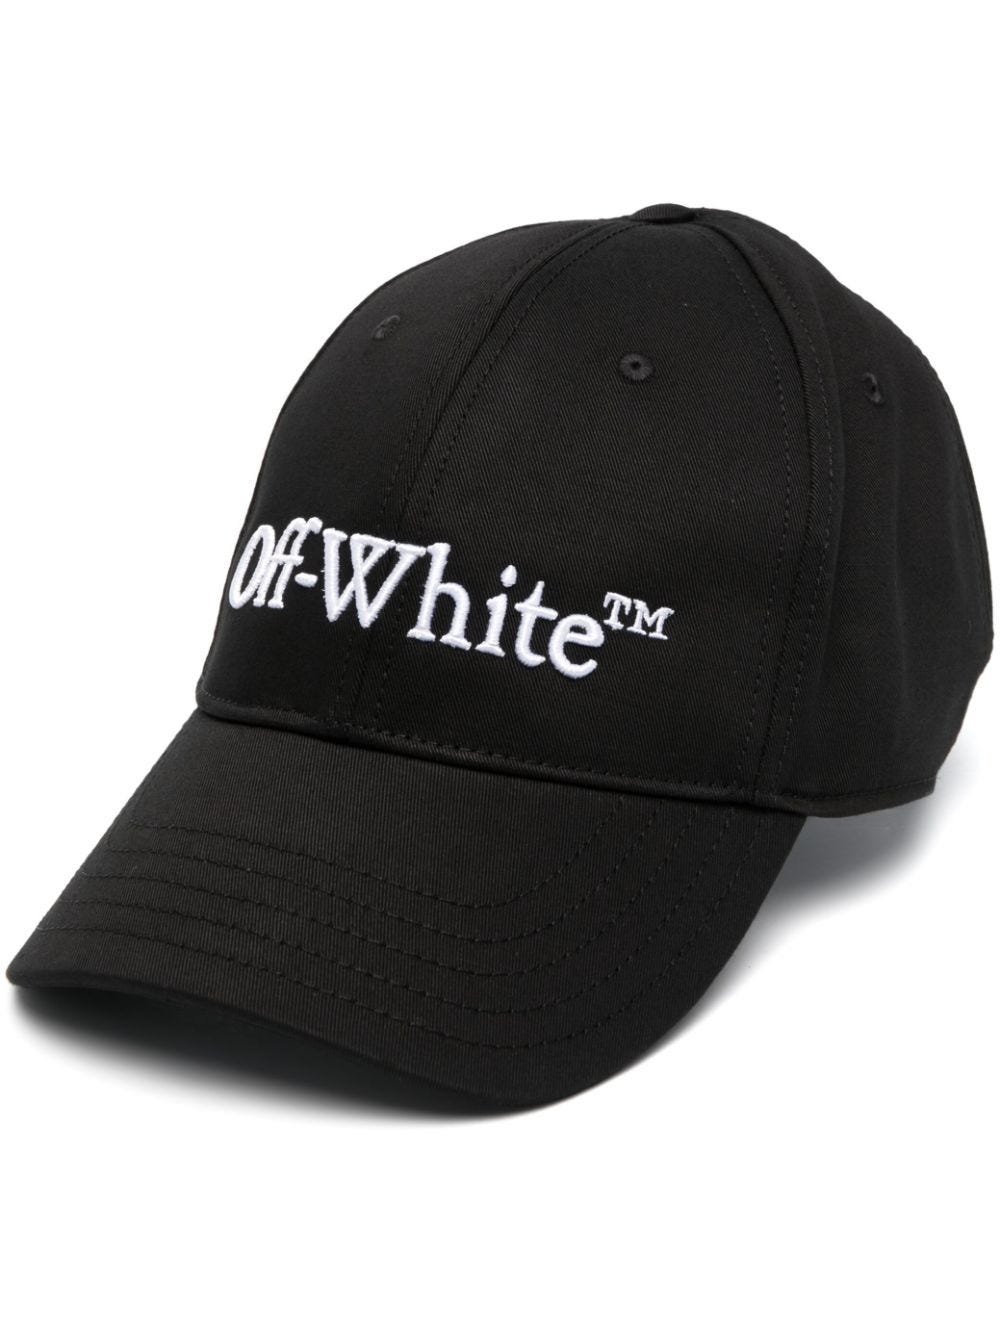 OFF-WHITE BLACK LOGO BASEBALL CAP